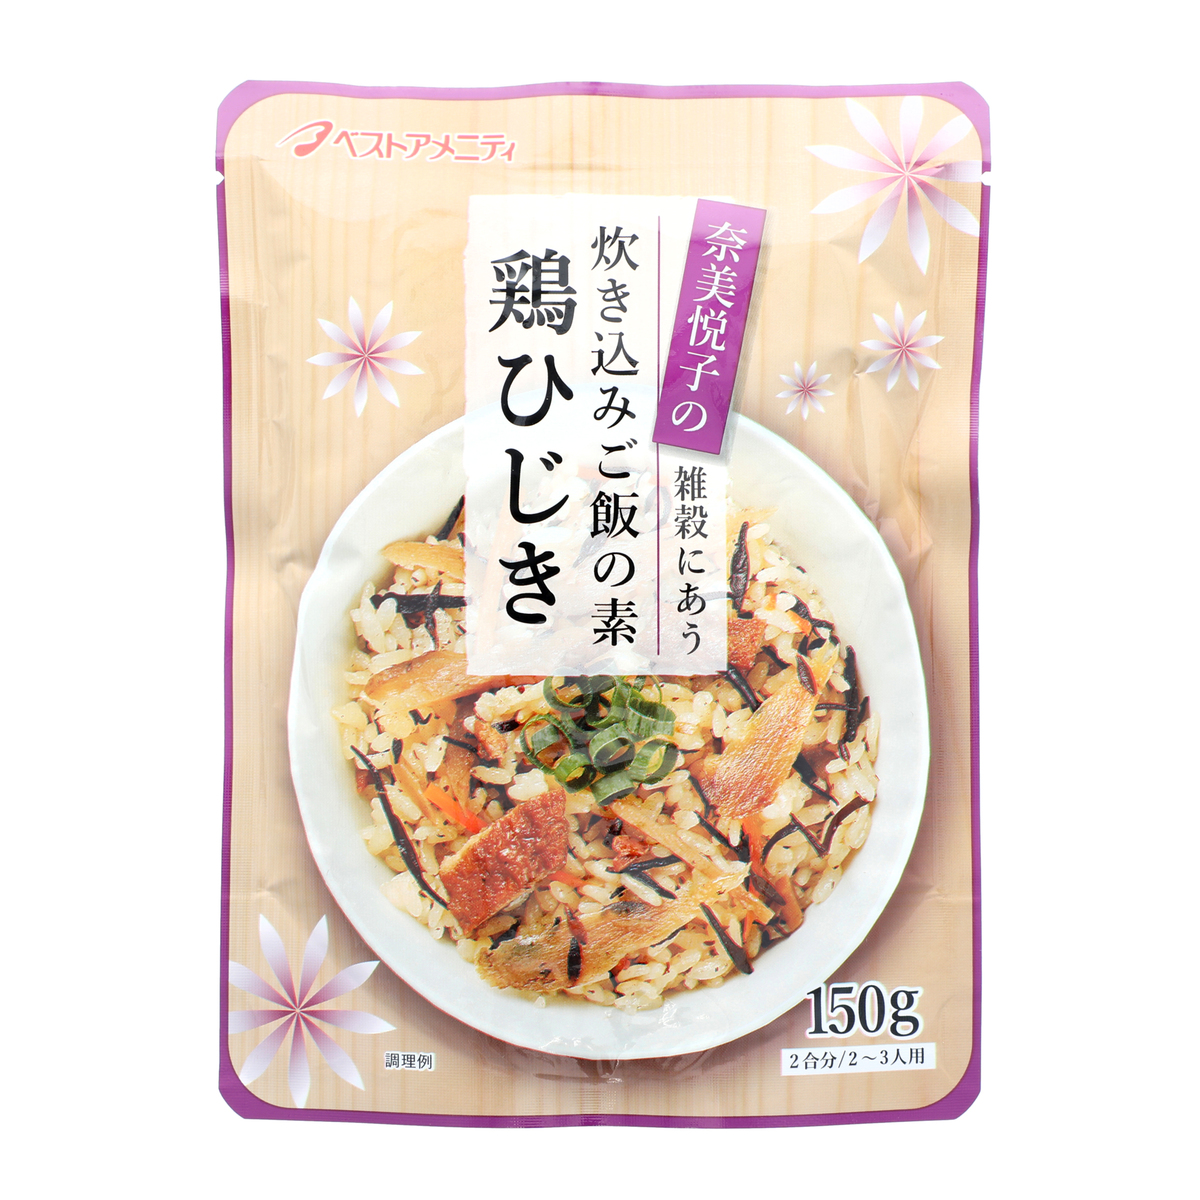 奈美悦子の雑穀と炊き込みご飯の素セット - 米・雑穀・粉類